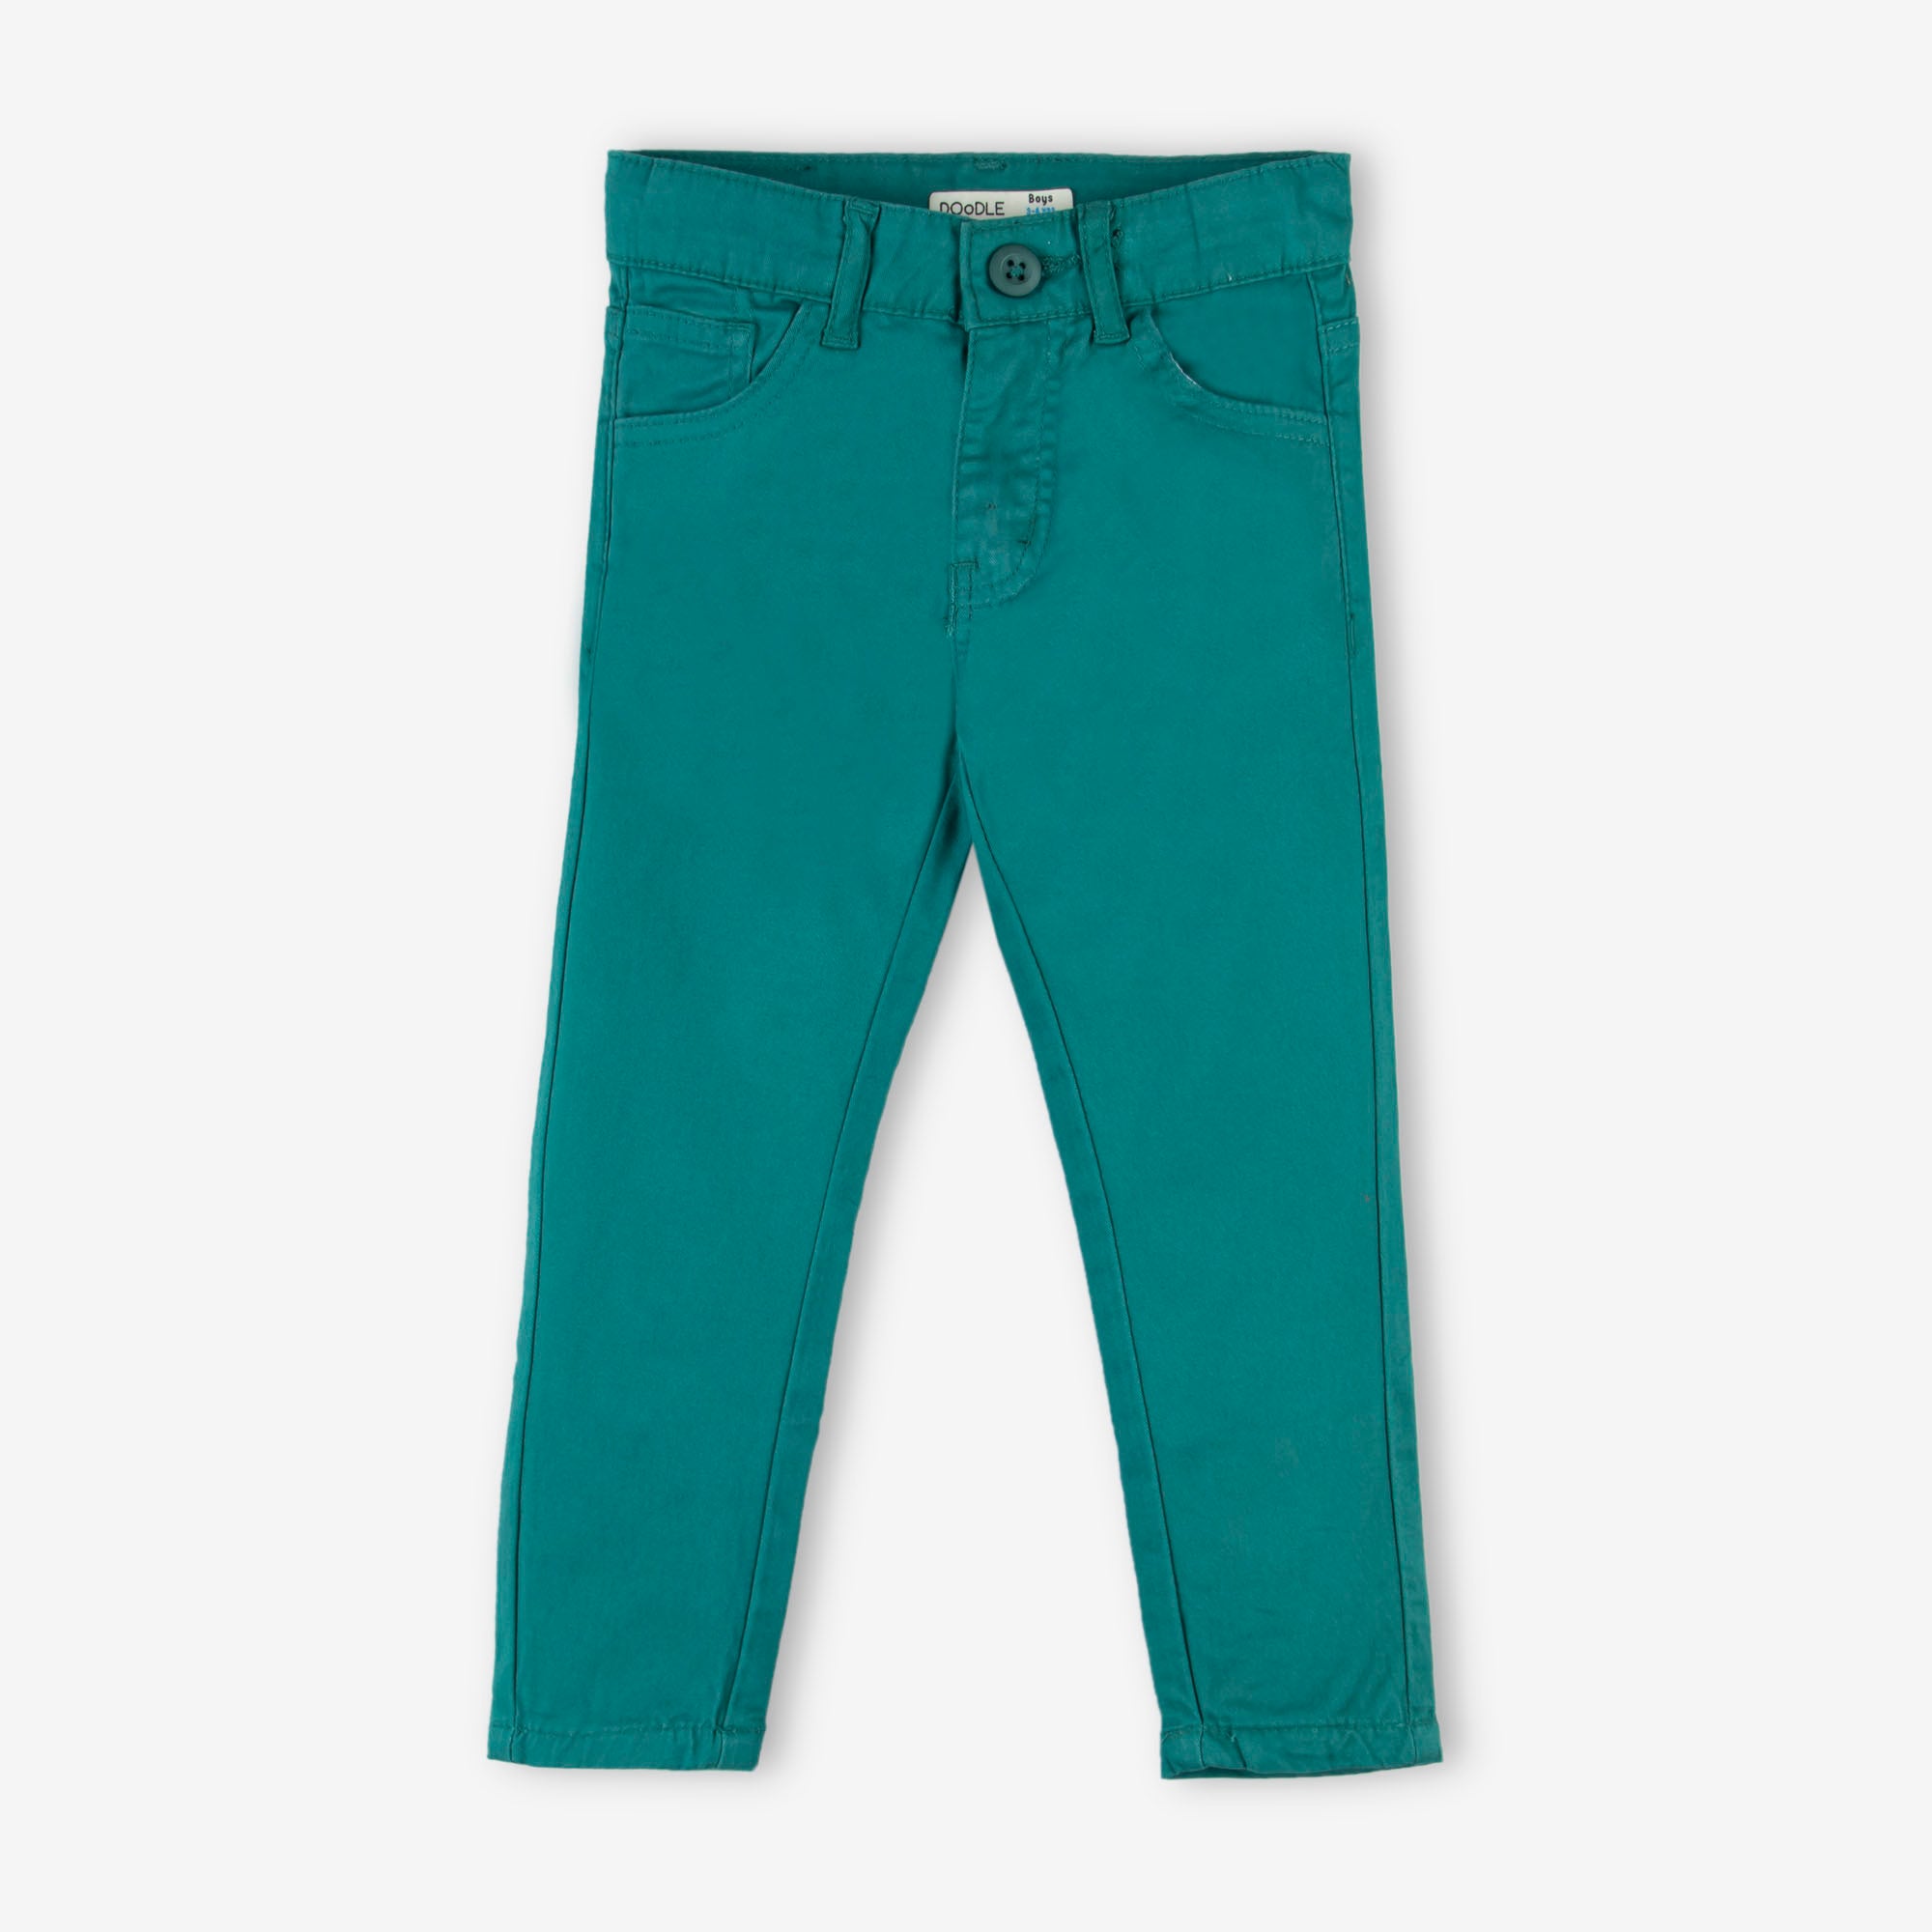 Pine Green Pants